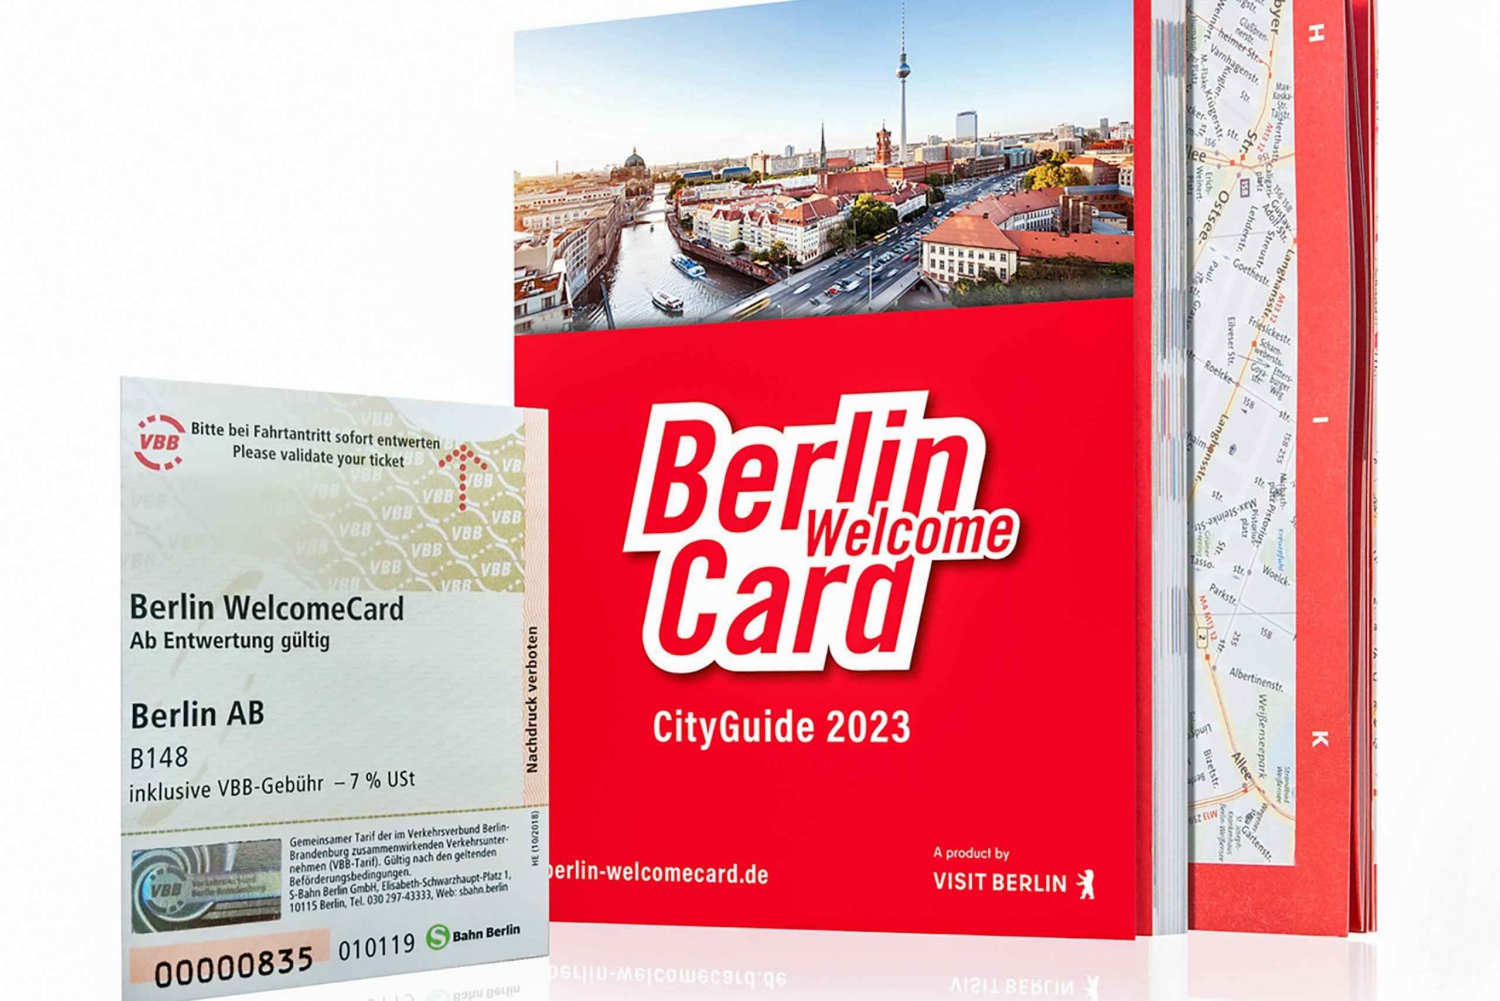 Berlin WelcomeCard: Discounts & Transport Berlin Zones (AB)